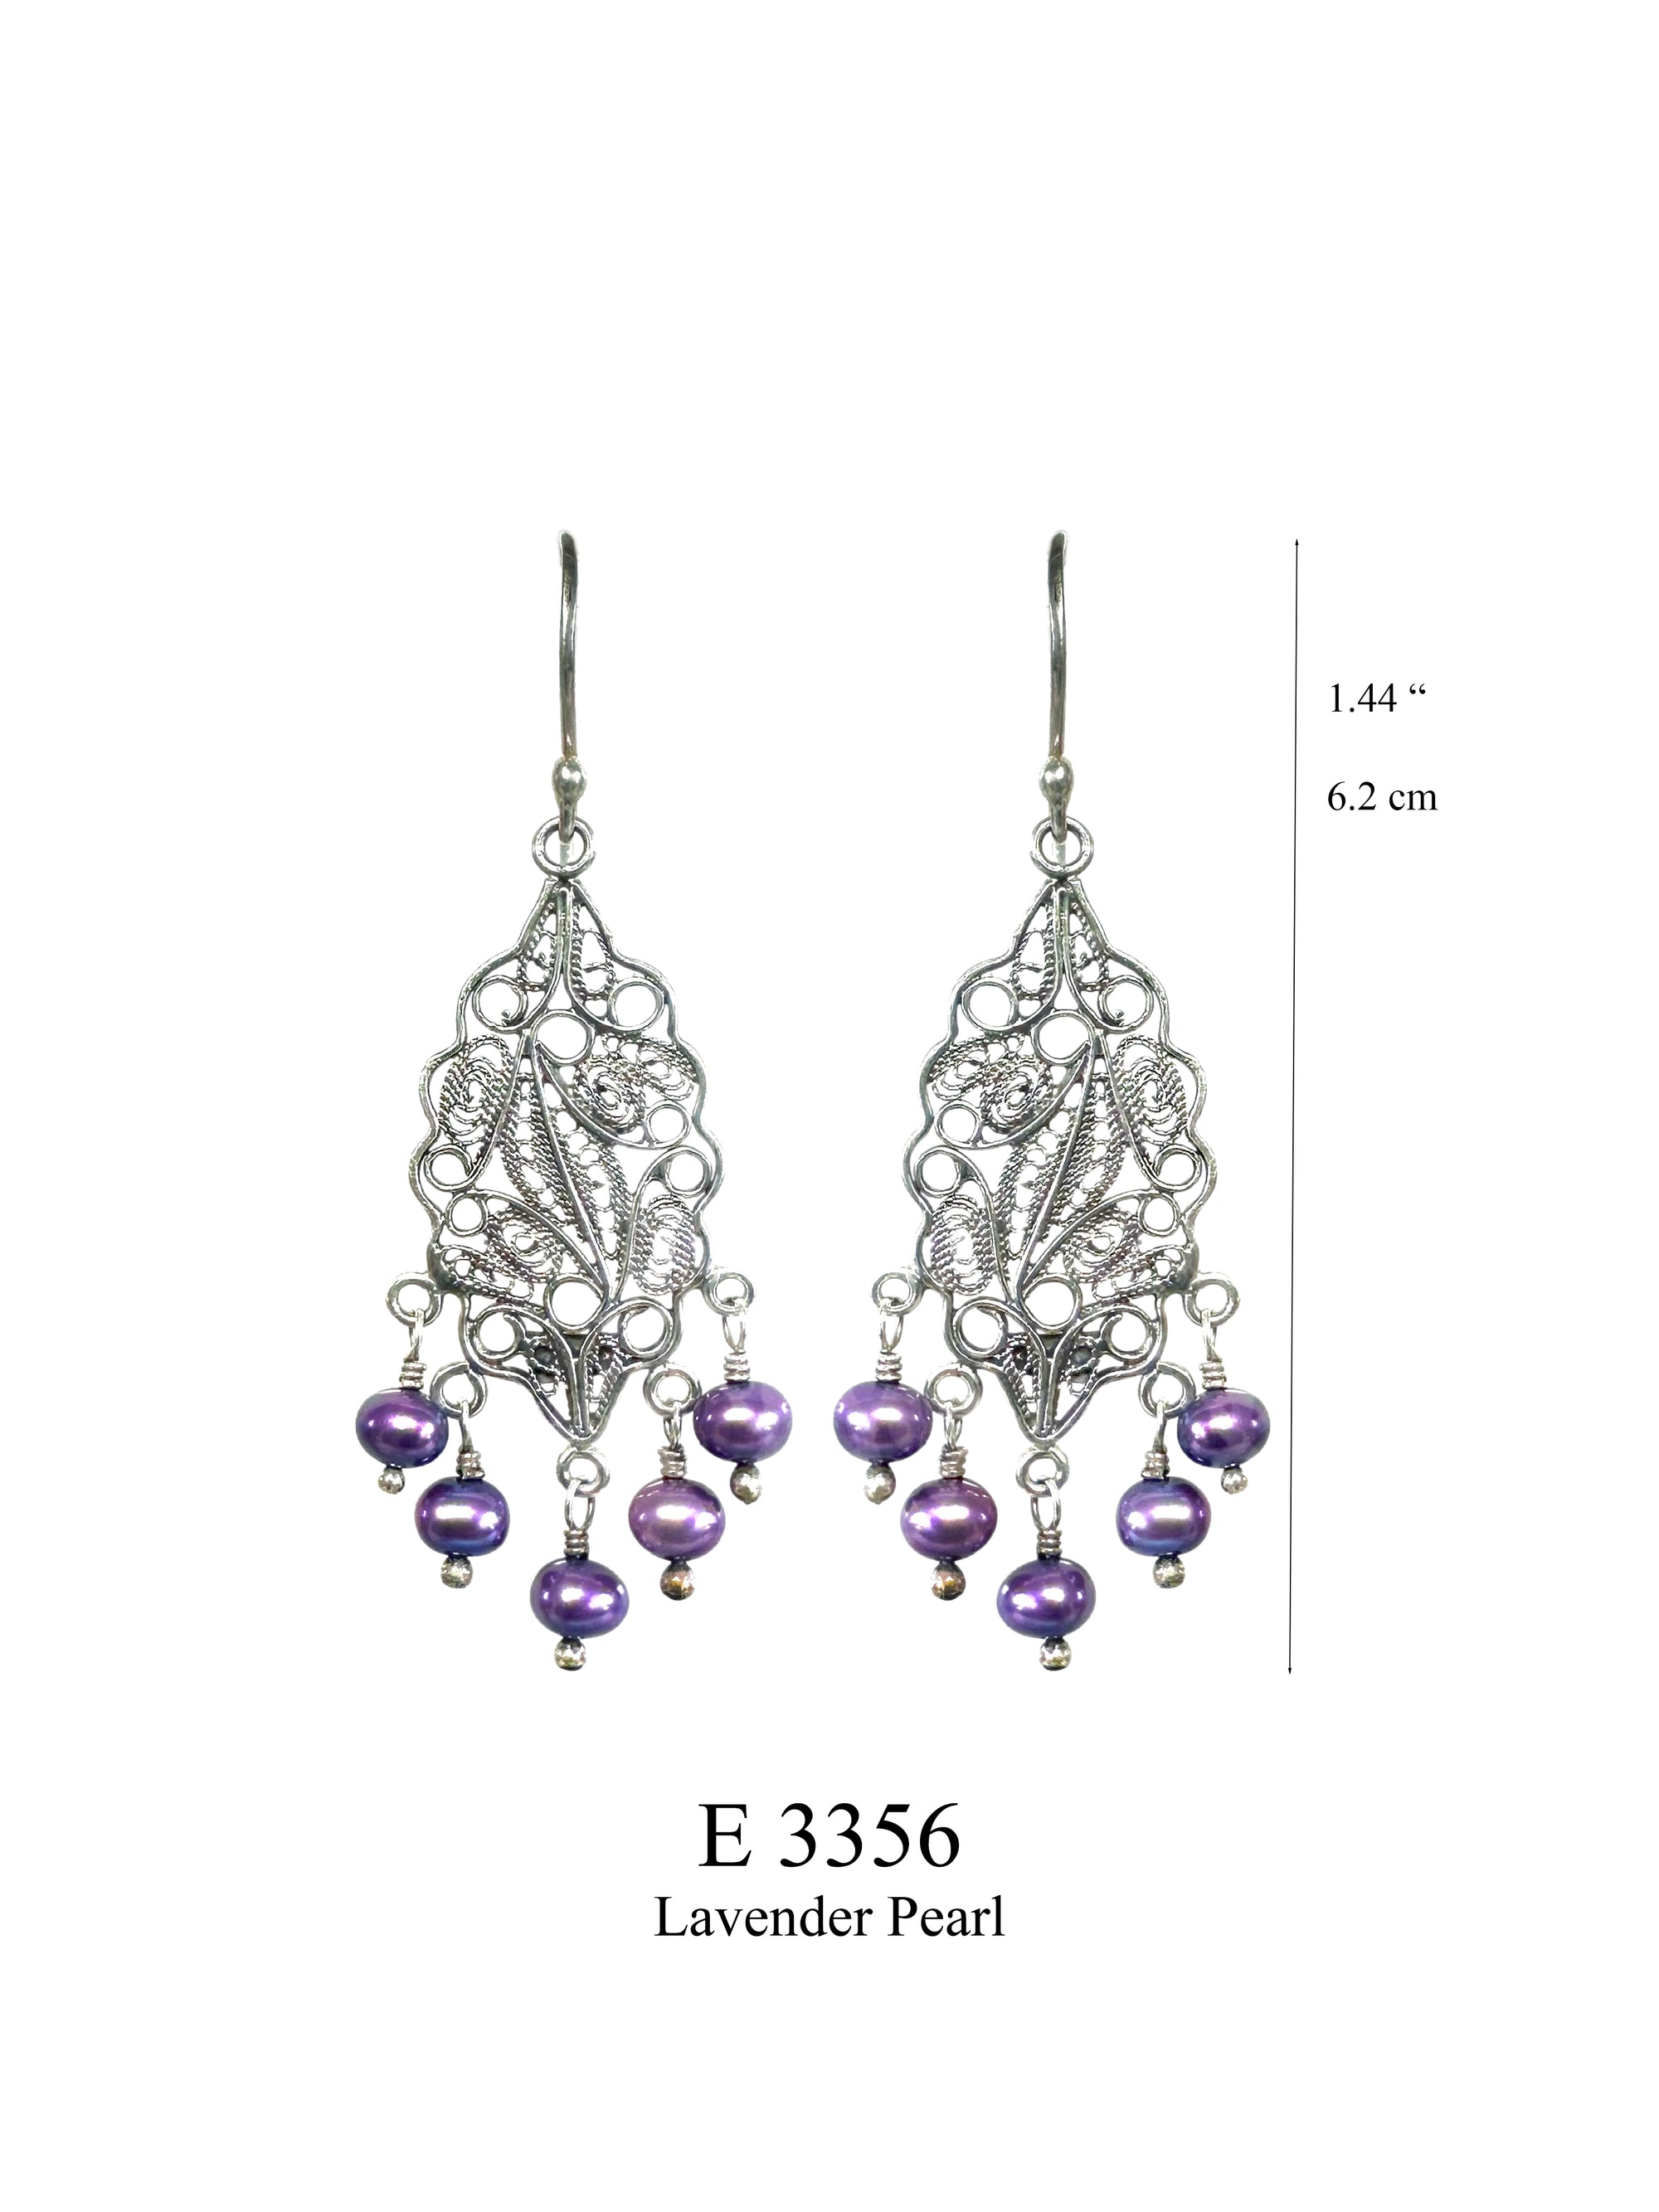 Intricate Lavender earrings - Lavender Freshwater Pearls ✿